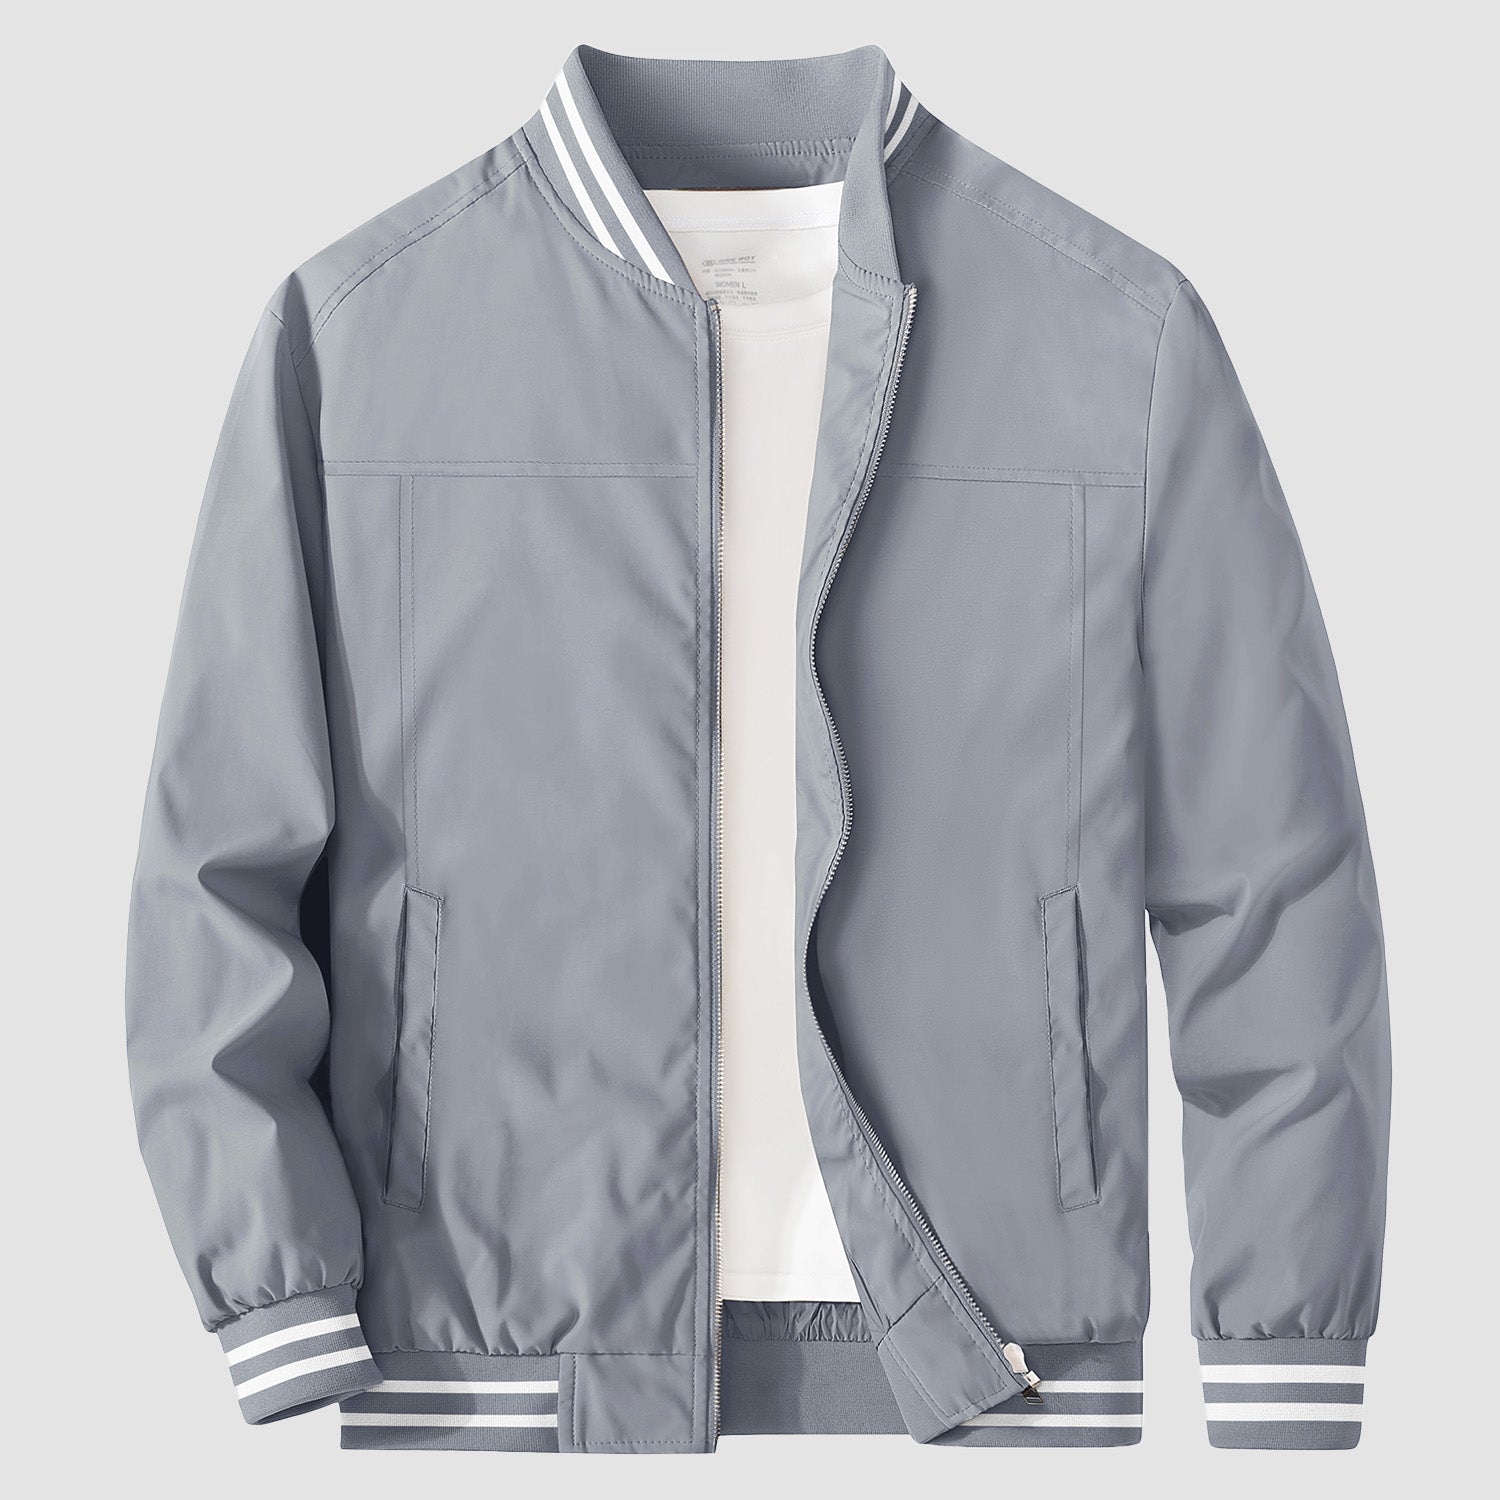 Men's Bomber Jacket Lightweight Windbreaker Casual Jacket Outwear